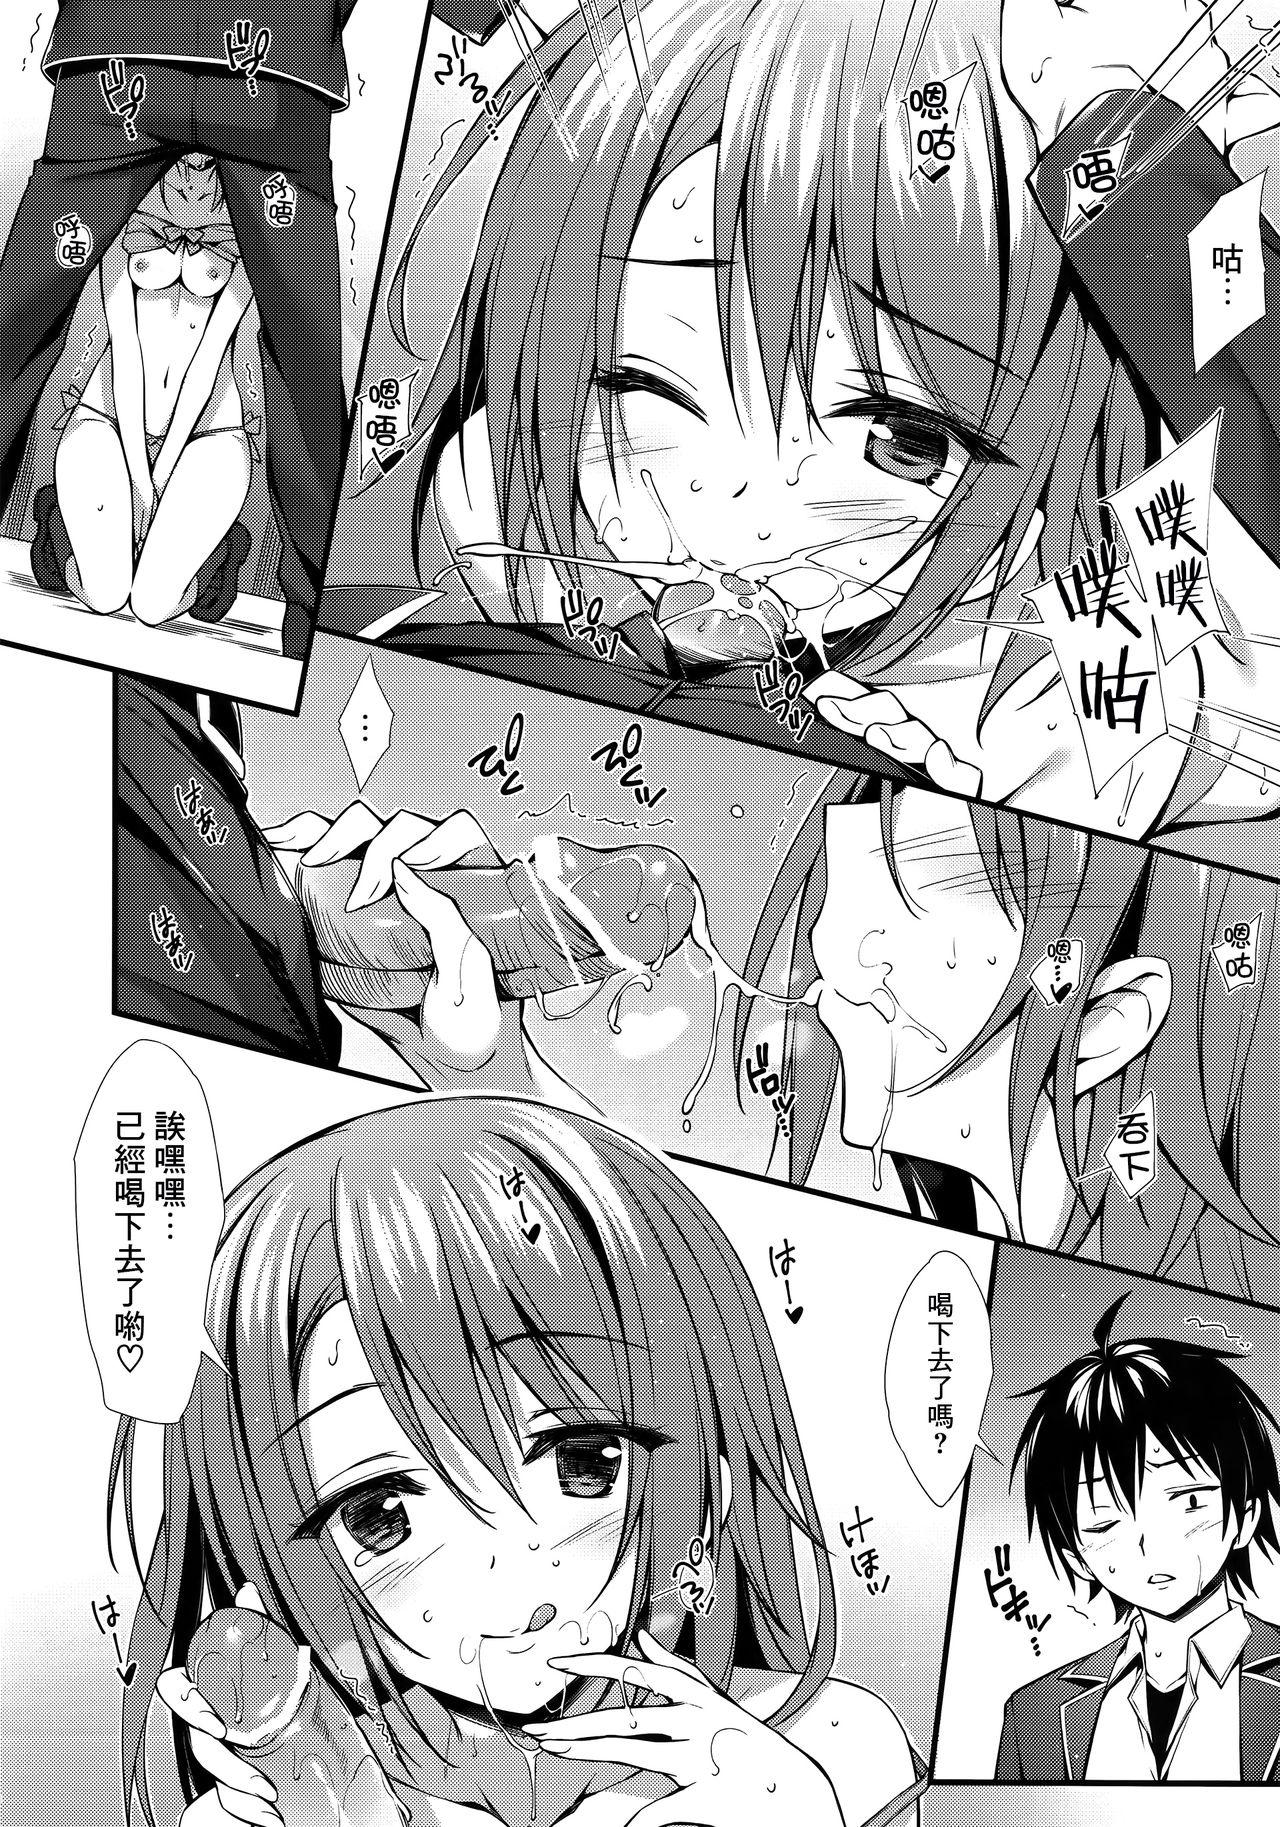 Clitoris Atashi no Daisuki na Senpai♥ - Yahari ore no seishun love come wa machigatteiru Twinks - Page 9